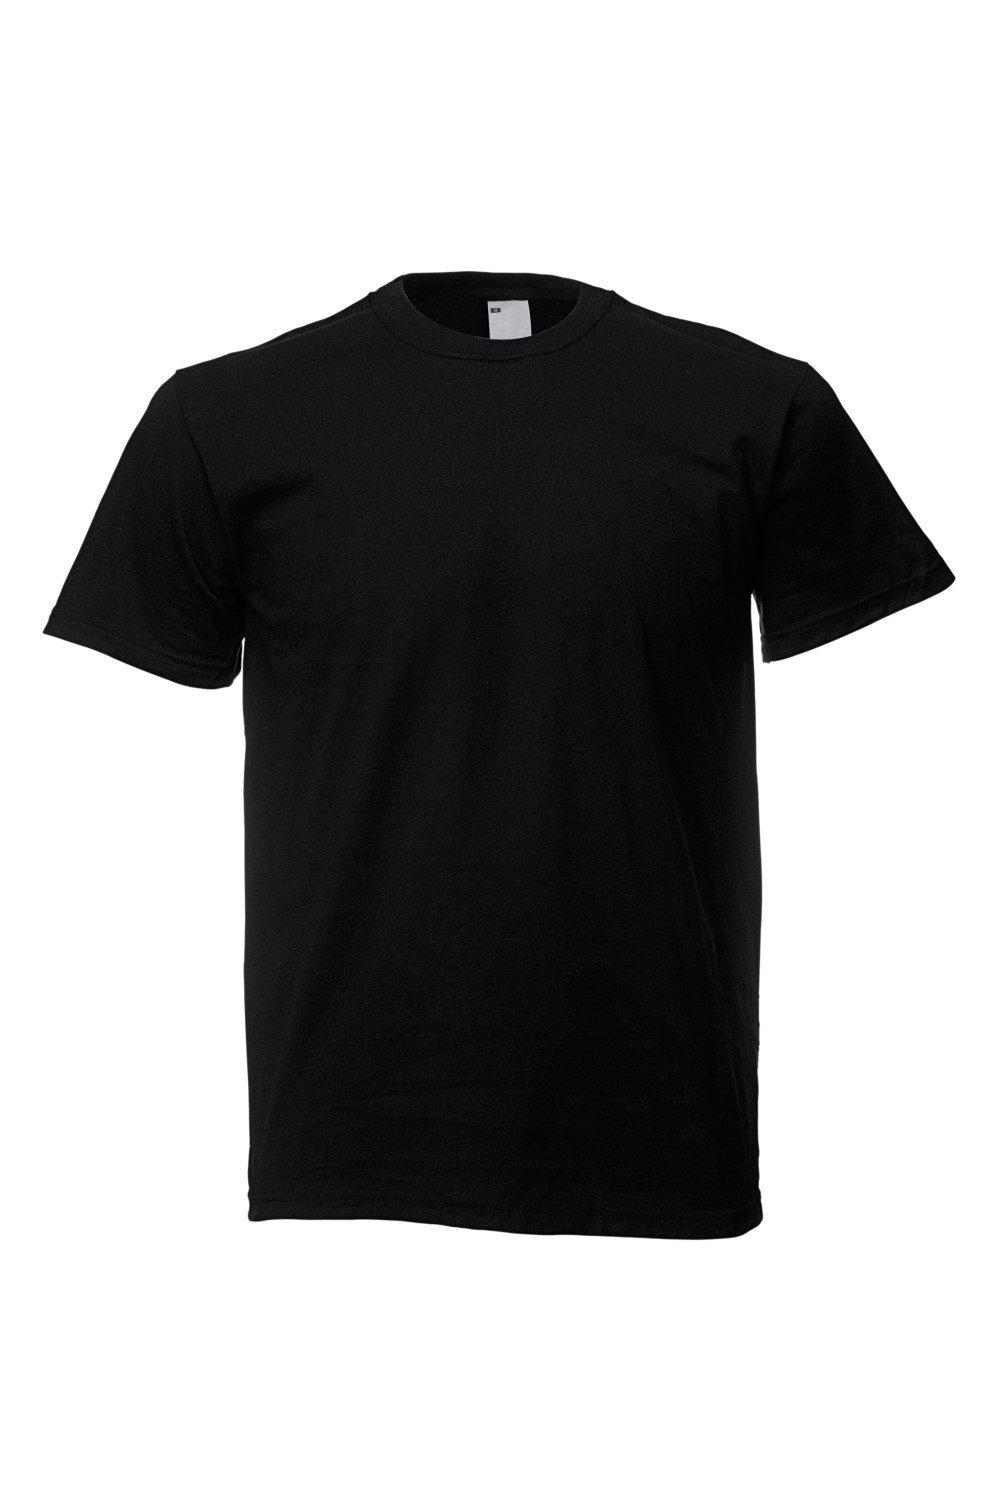 Повседневная футболка с коротким рукавом Universal Textiles, черный мужская футболка нло капибара и космос 2xl серый меланж